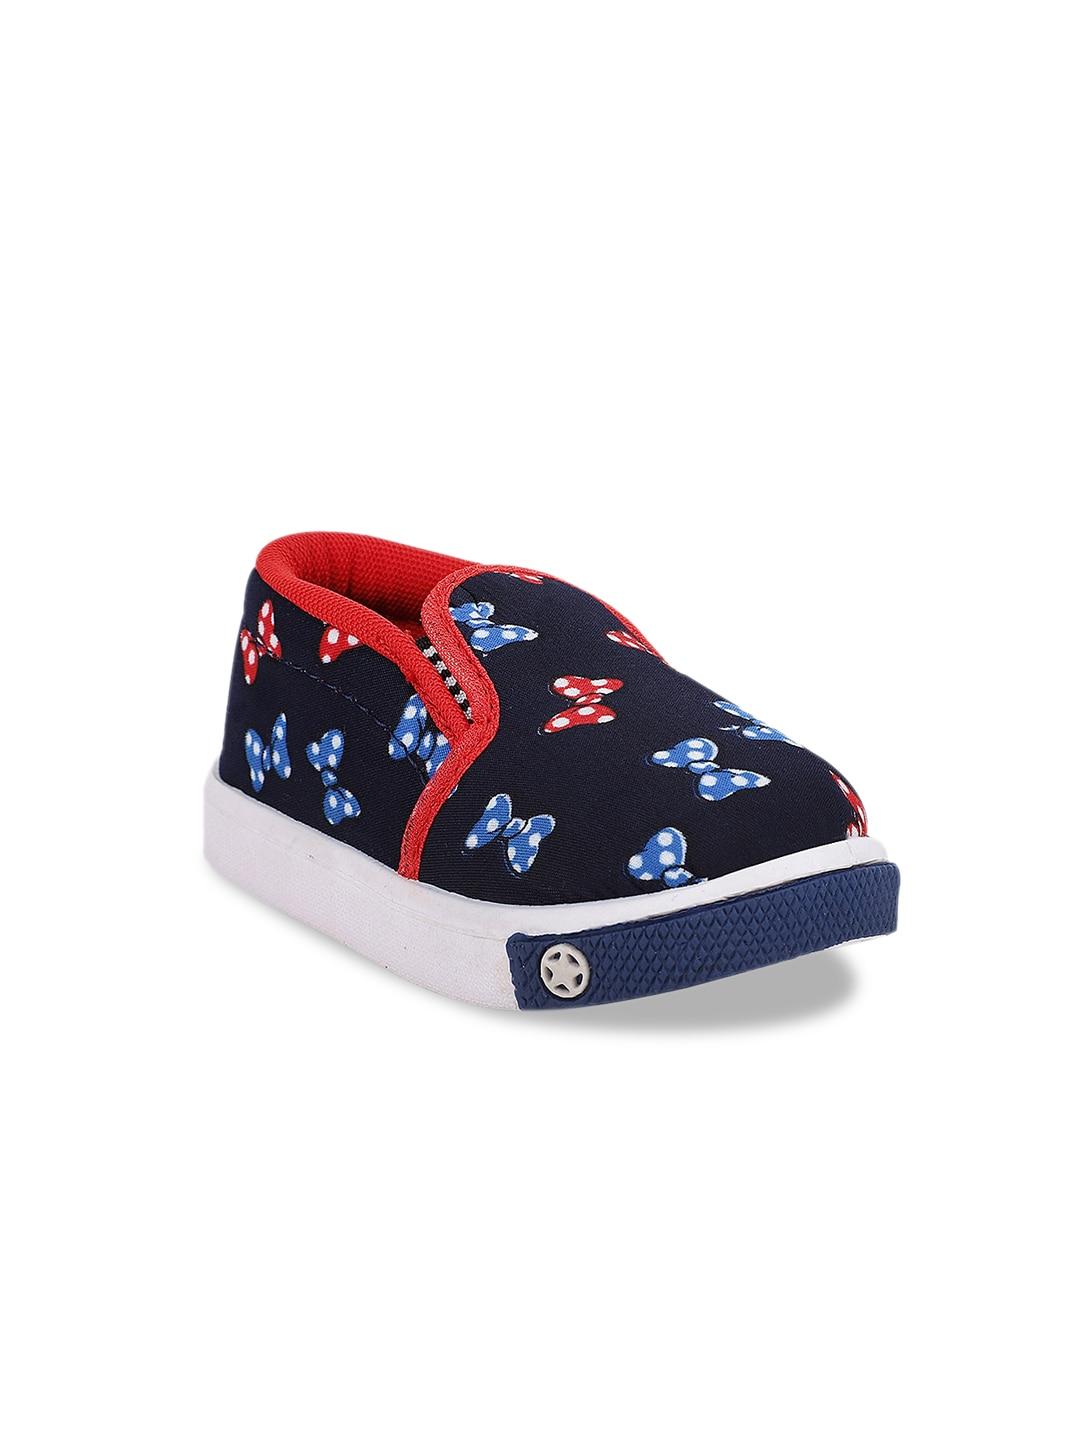 neobaby kids navy blue & red printed slip-on sneakers